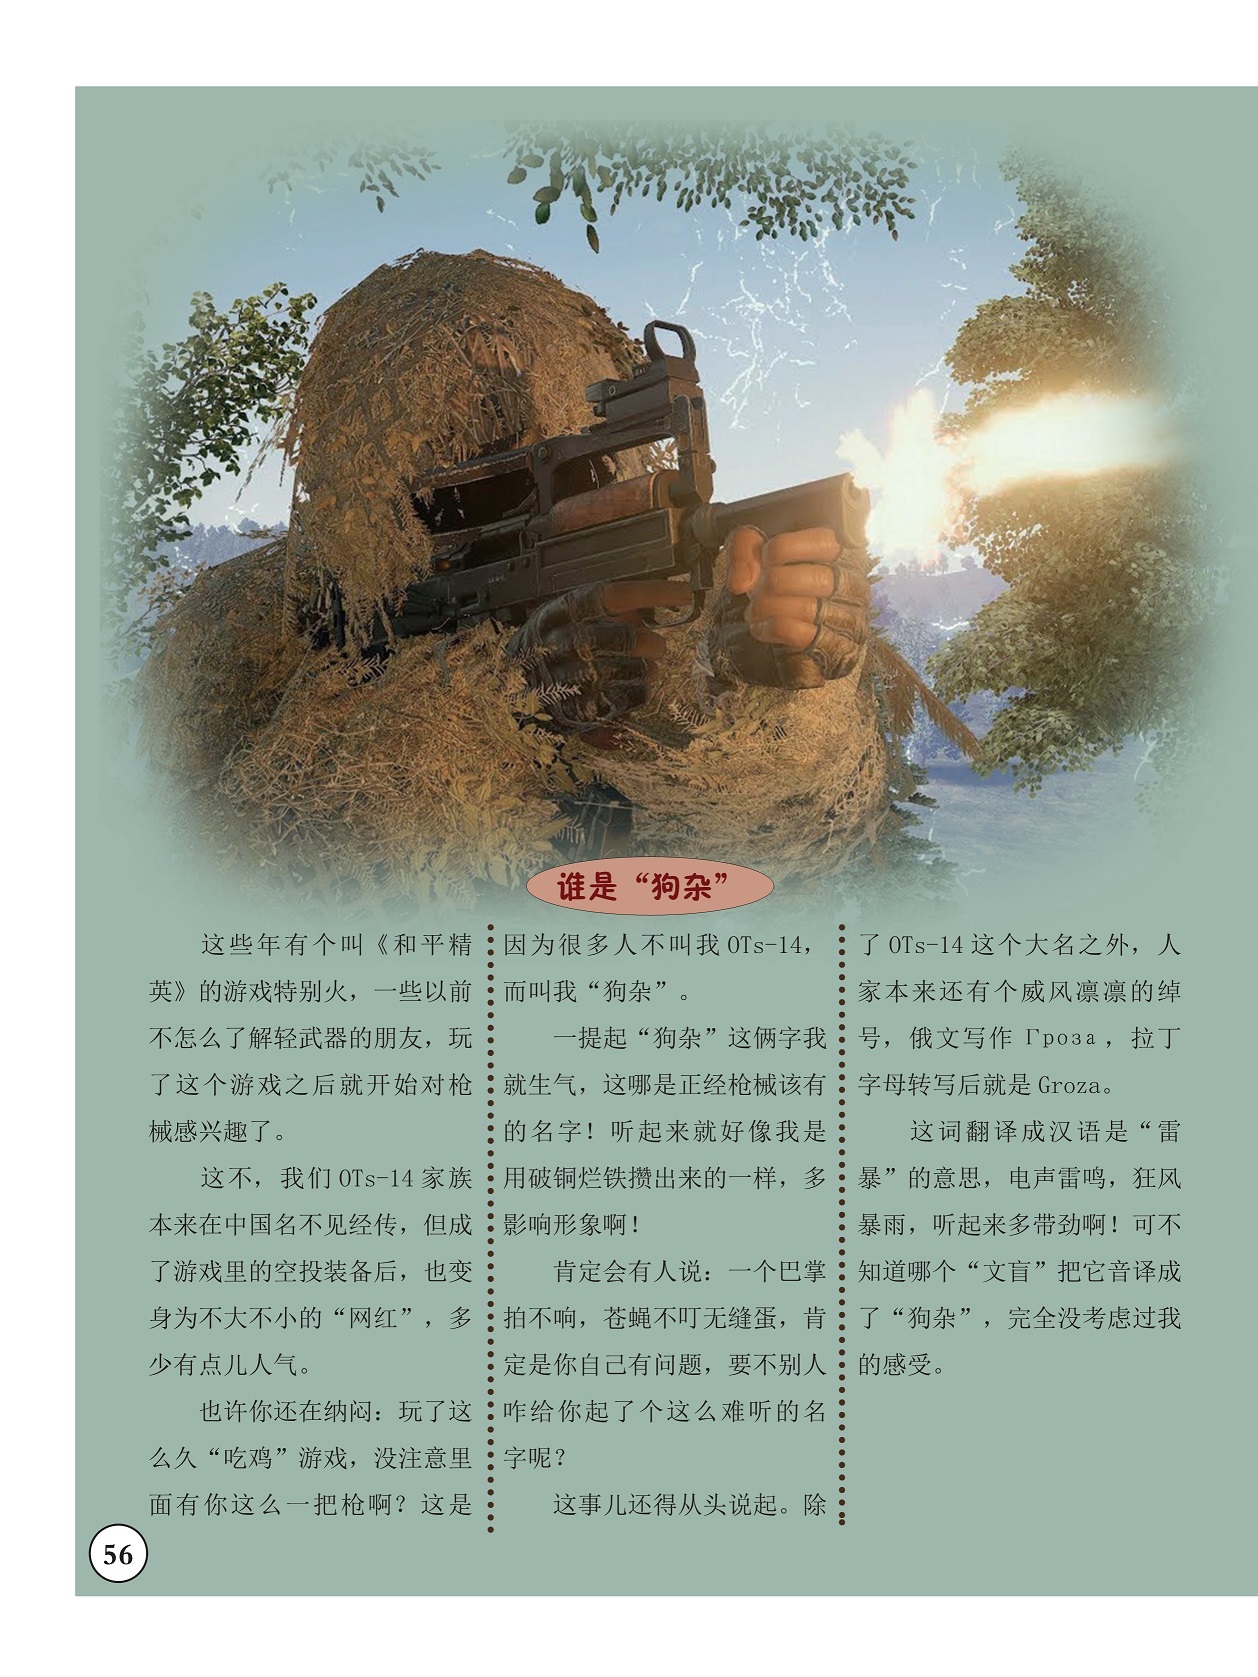 《和平精英》的游戏特别火, Groza翻译成汉语是“雷暴”